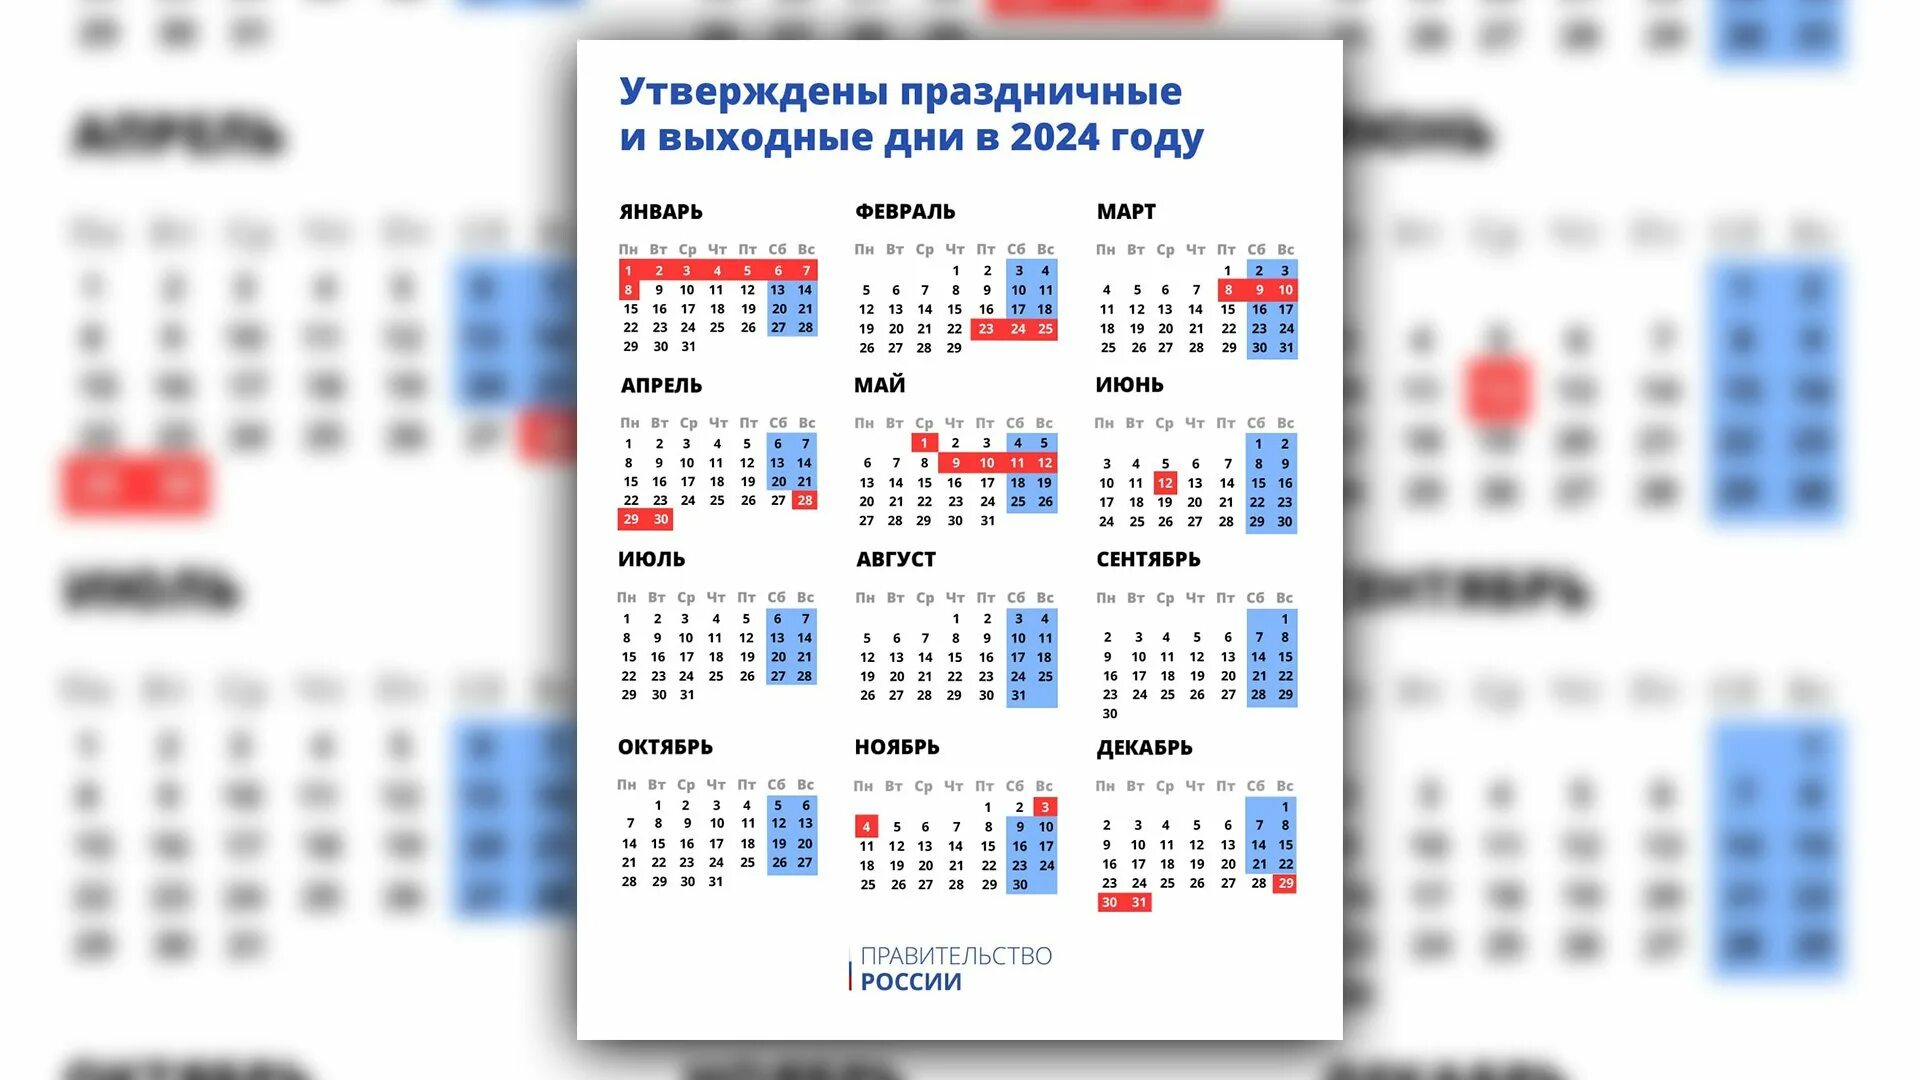 Часы работы январь 2024. Праздничные дни дни 2024. Праздничные дни в 2024 году в России. Выходные и праздничные дни в 2024 году. Выходные дни в этом году в 2024.